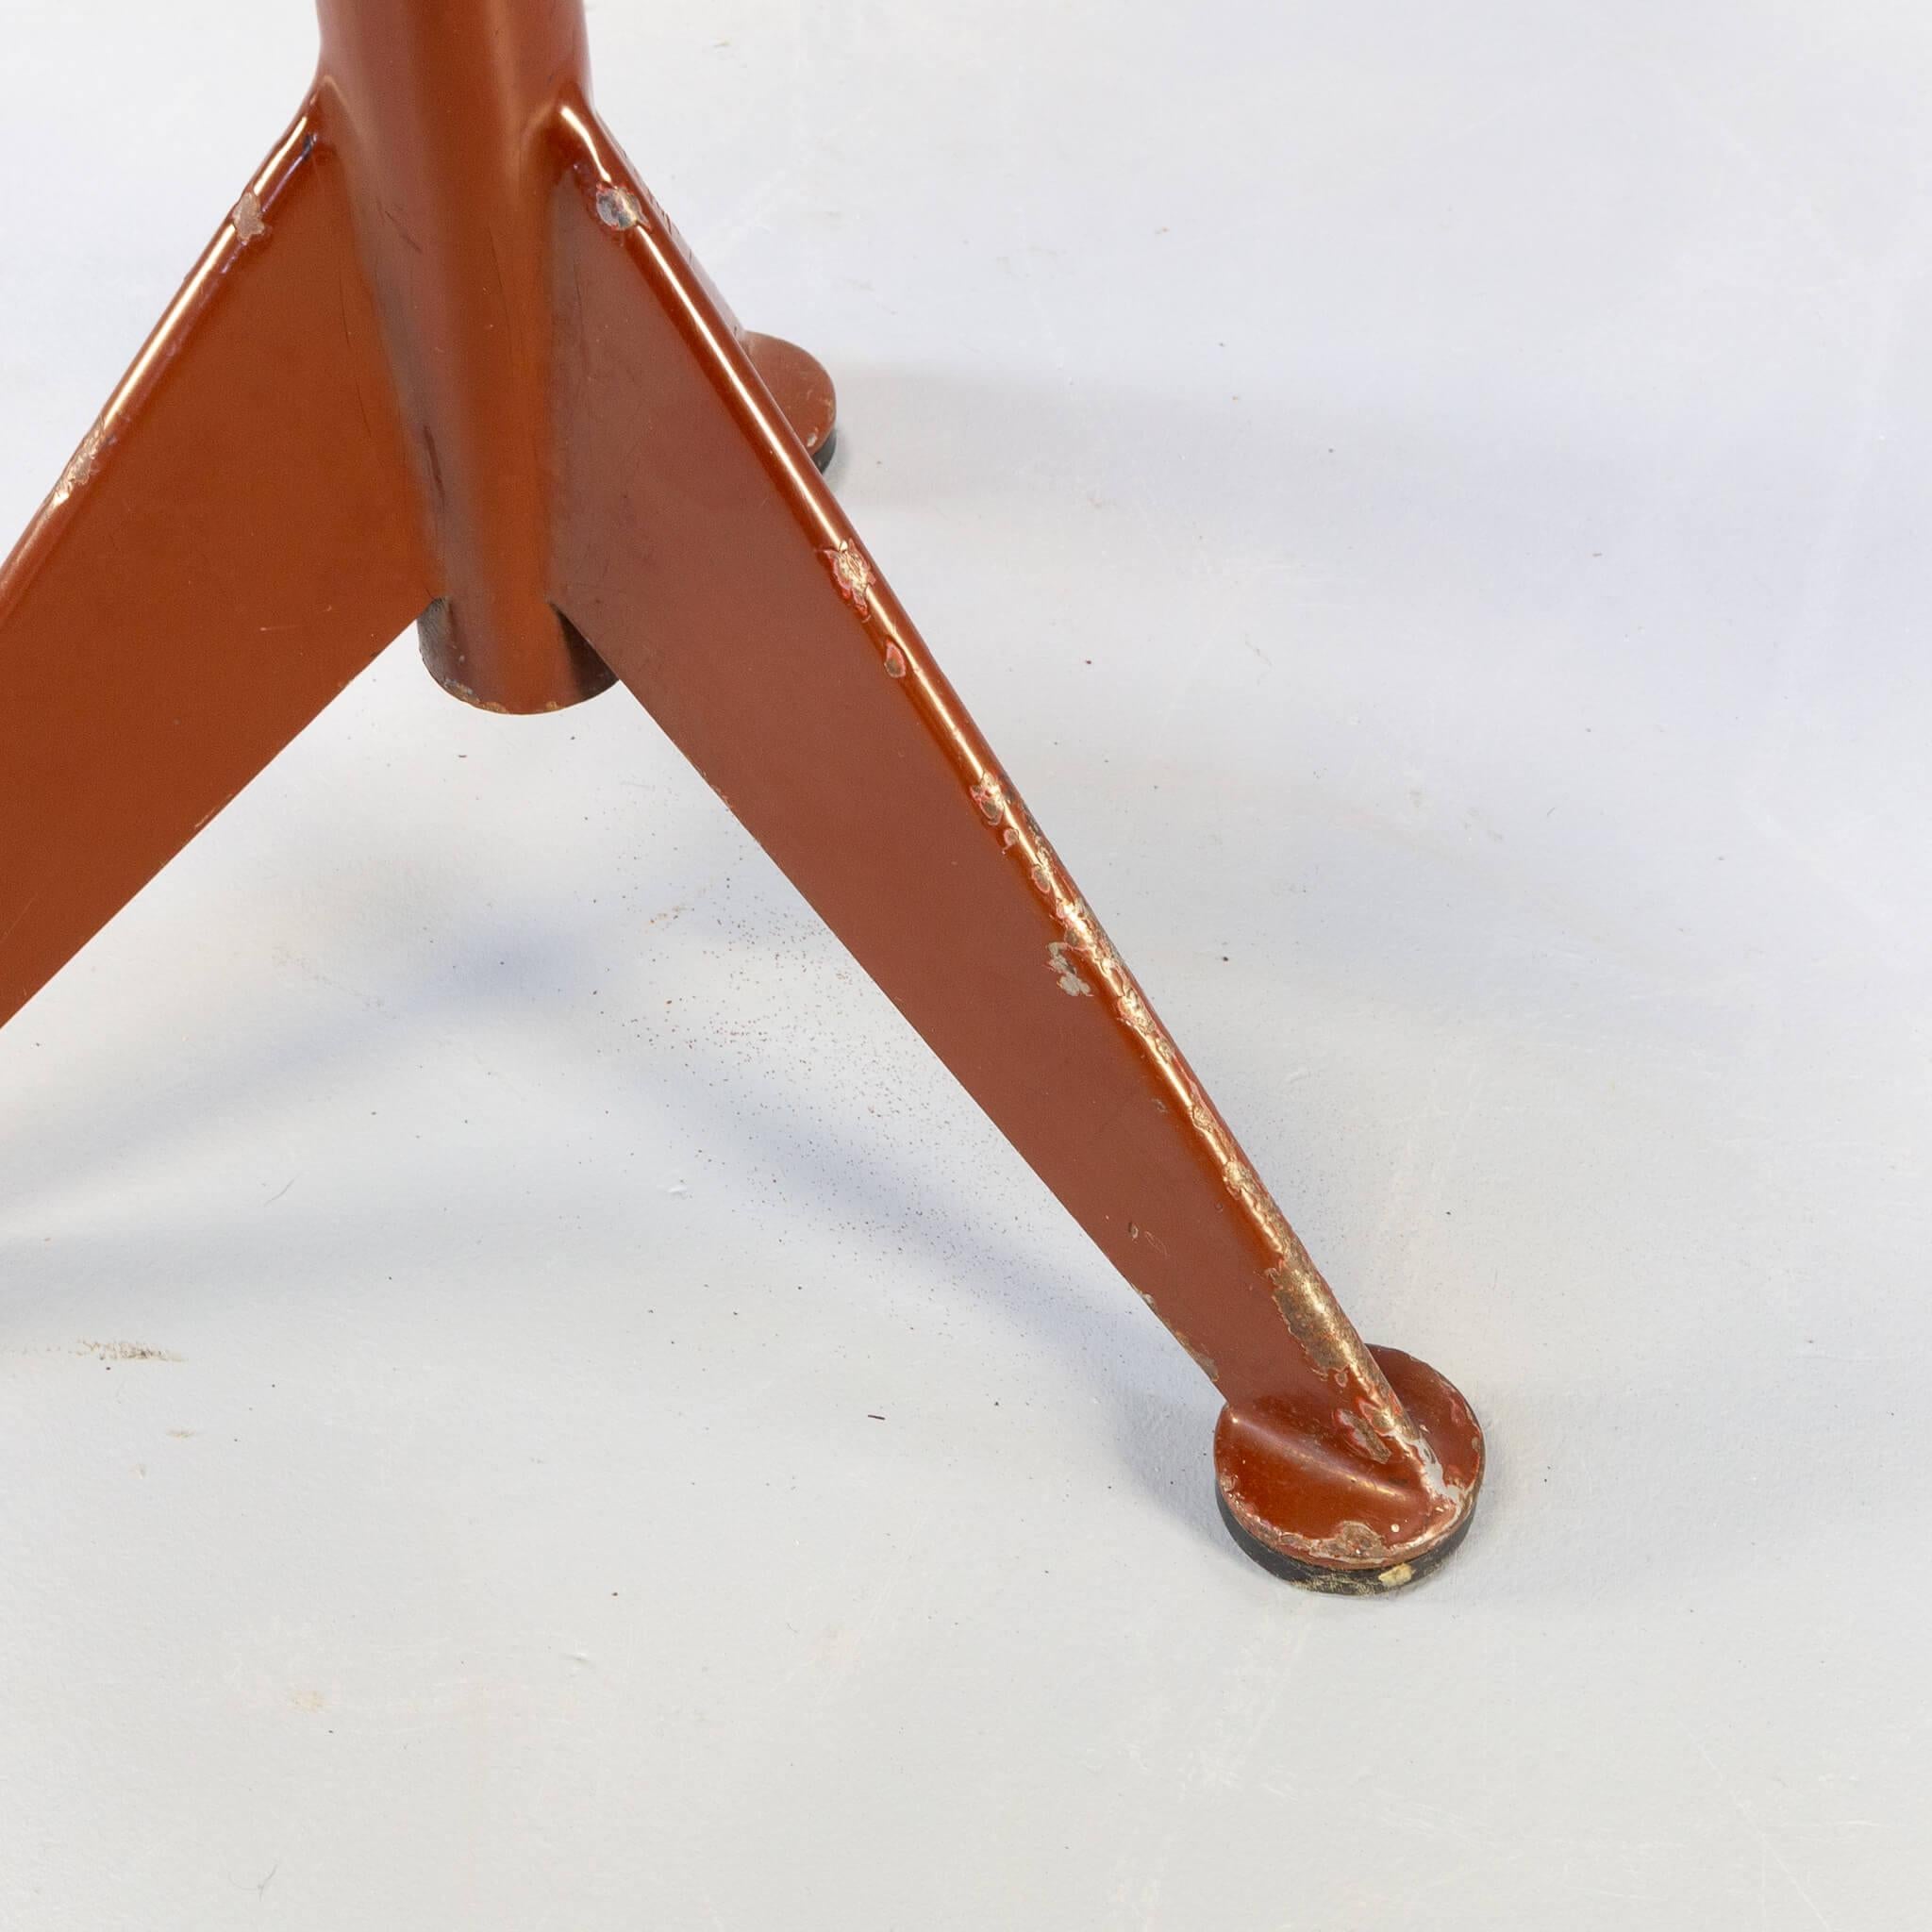 Metal Workshop stool by AB Odelberg-Olson